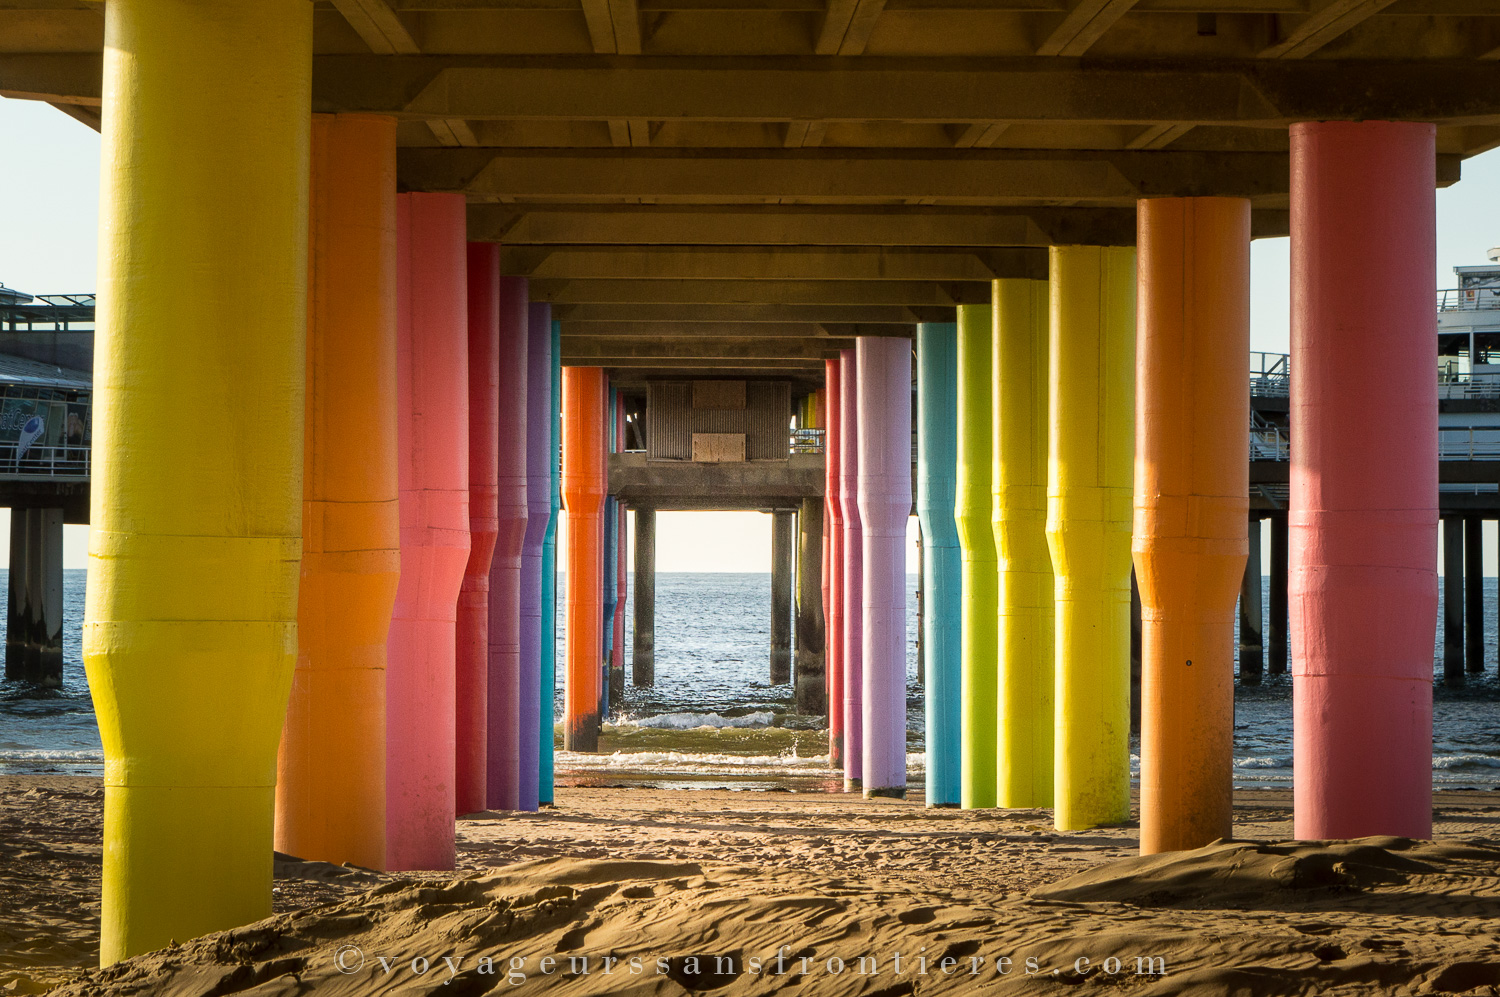 Colorful pillars at the Scheveningen beach - The Hague, Netherlands